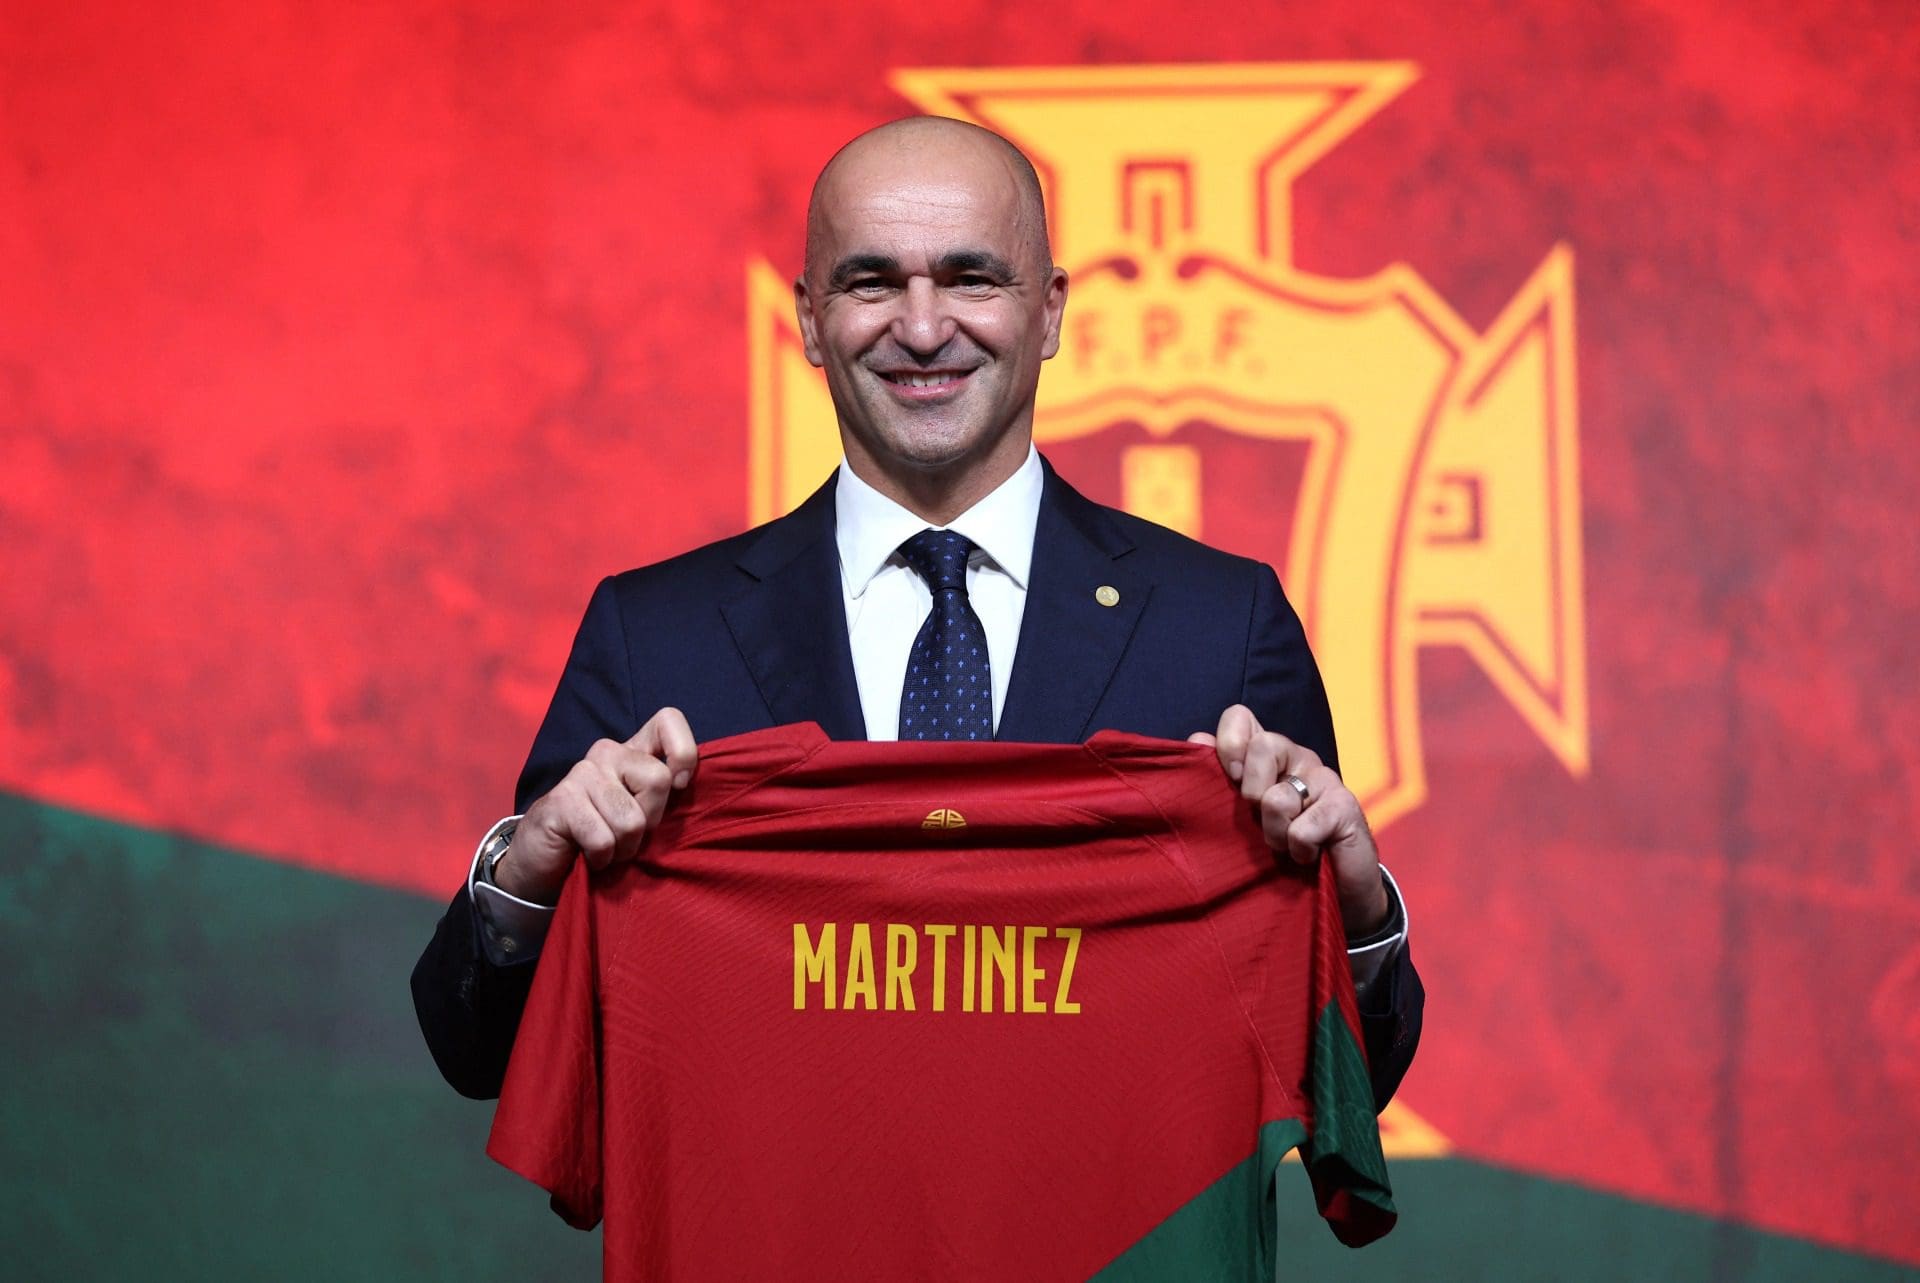 Roberto Martínez assume comando da seleção nacional